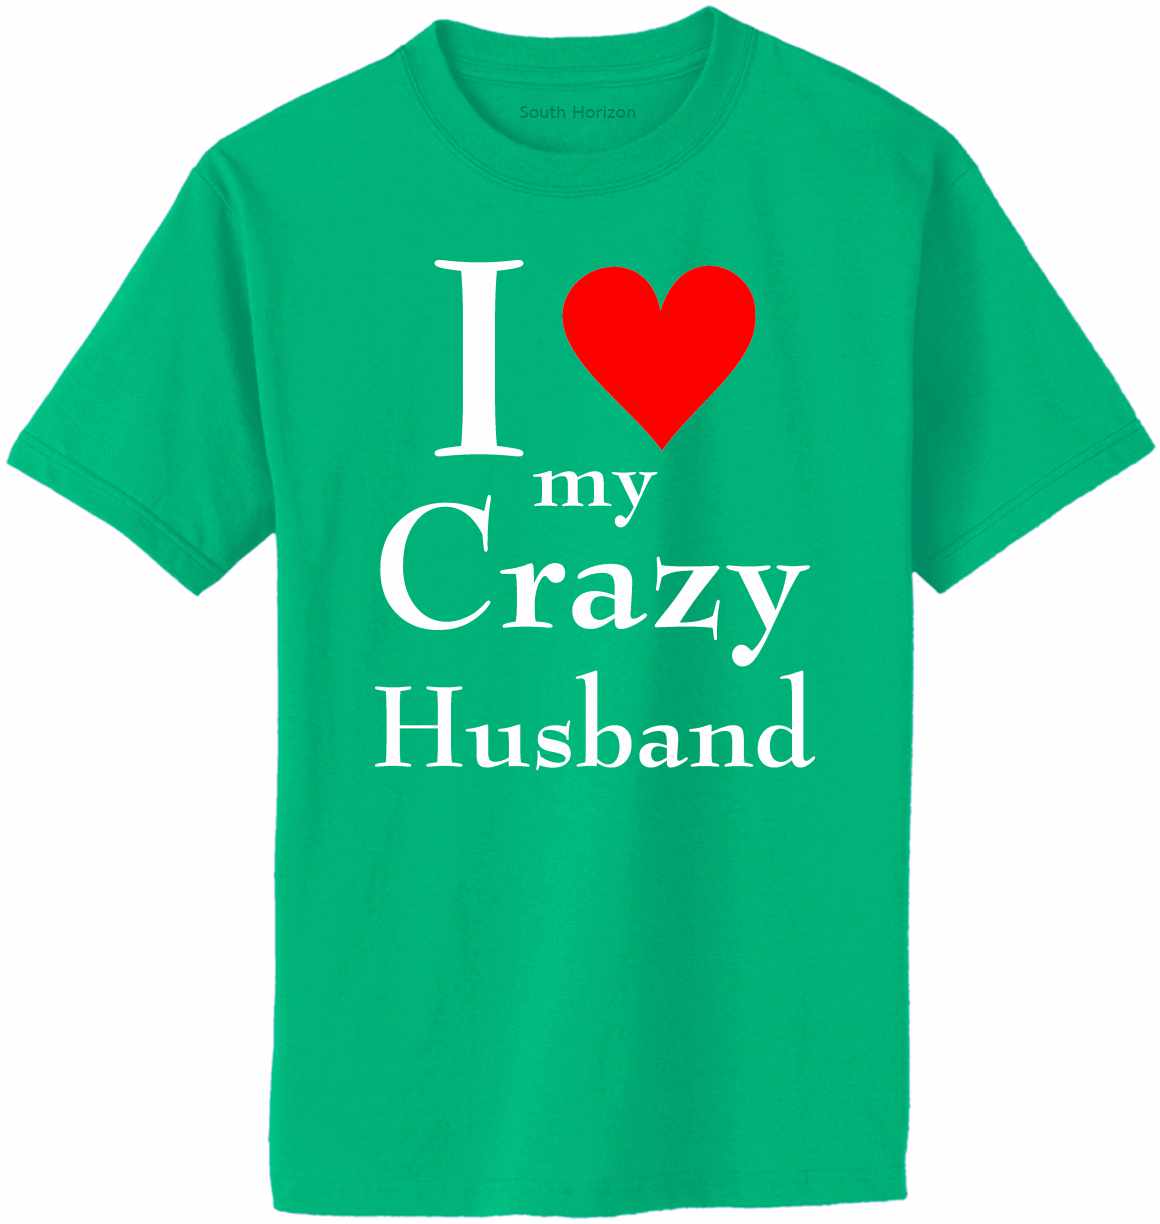 I LOVE MY CRAZY HUSBAND Adult T-Shirt (#1025-1)